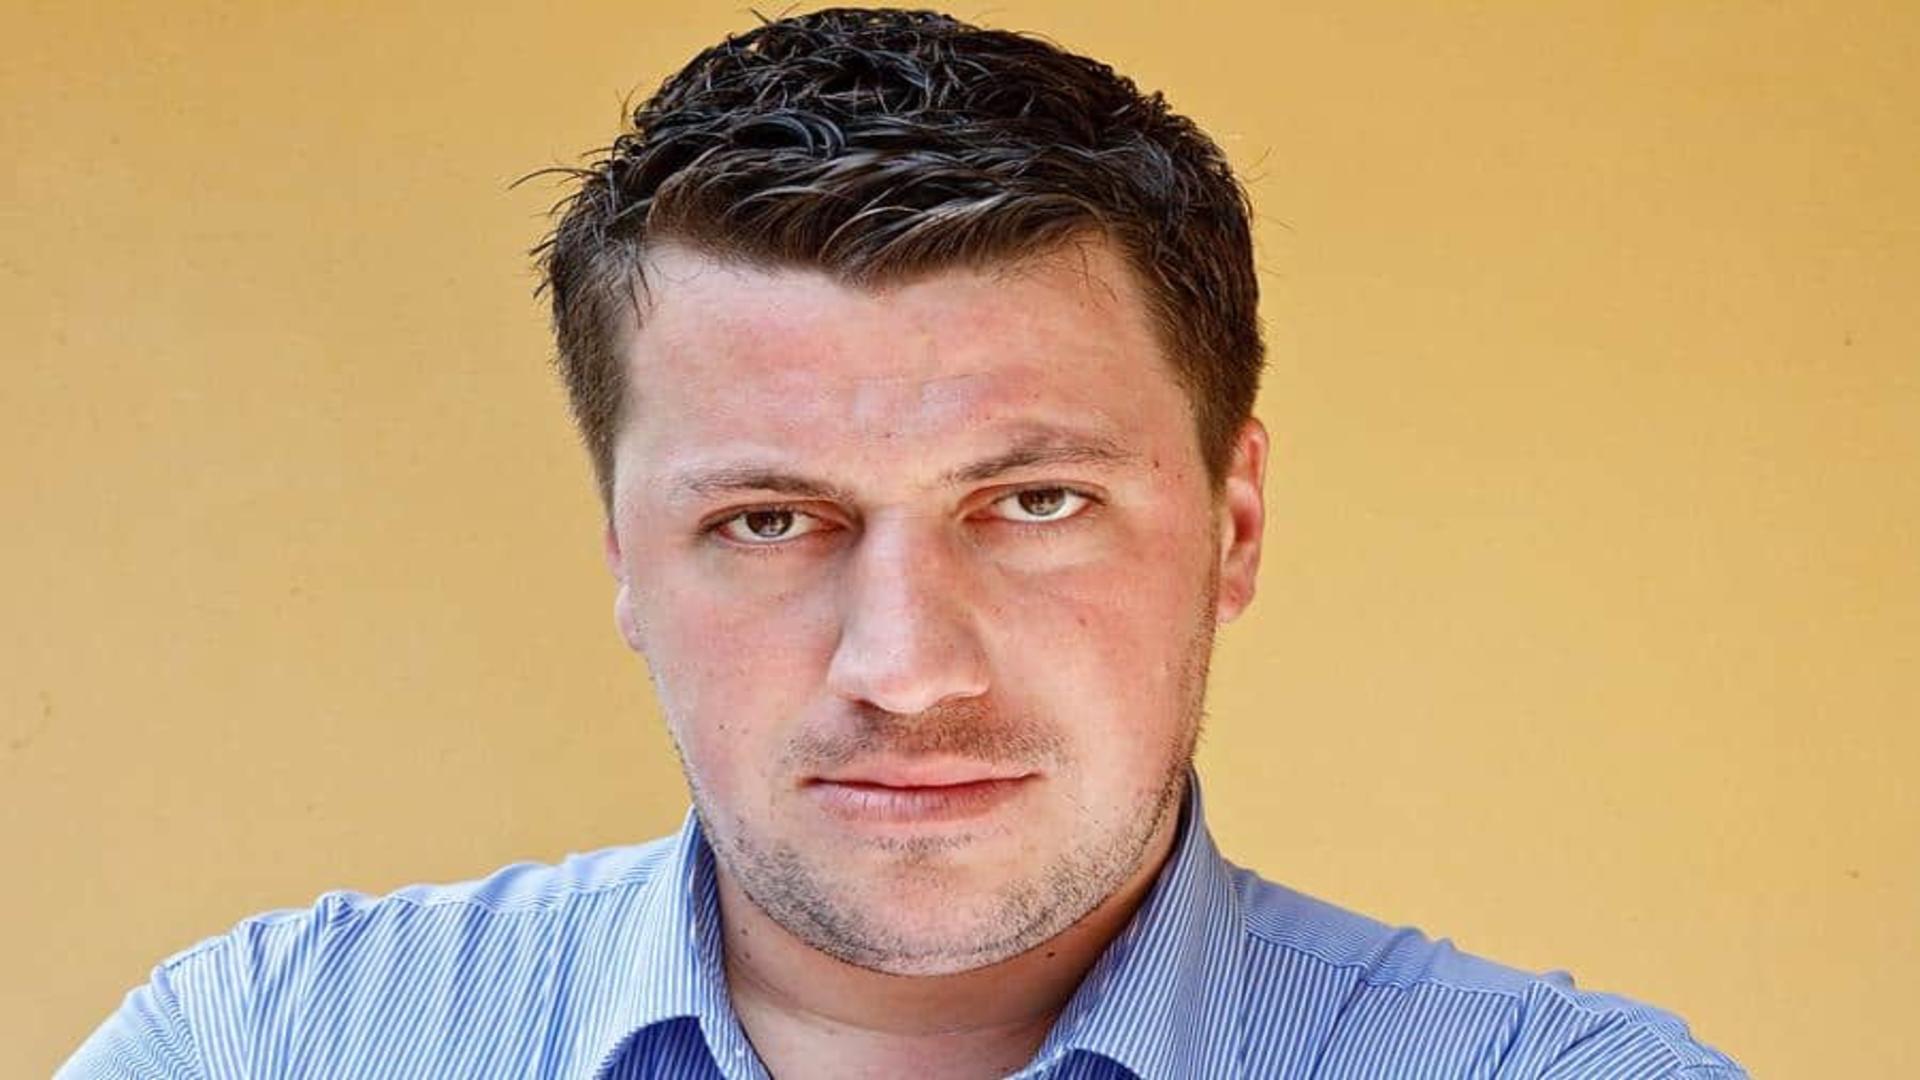 Liviu Alexa demisionează din PSD: “PSD nu a încetat să mă dezamăgească, promovând la nivel central securici ca Dâncu, reprimind în partid trădători precum Tudose, Grindeanu sau Neacșu, evitând orice reforme reale”